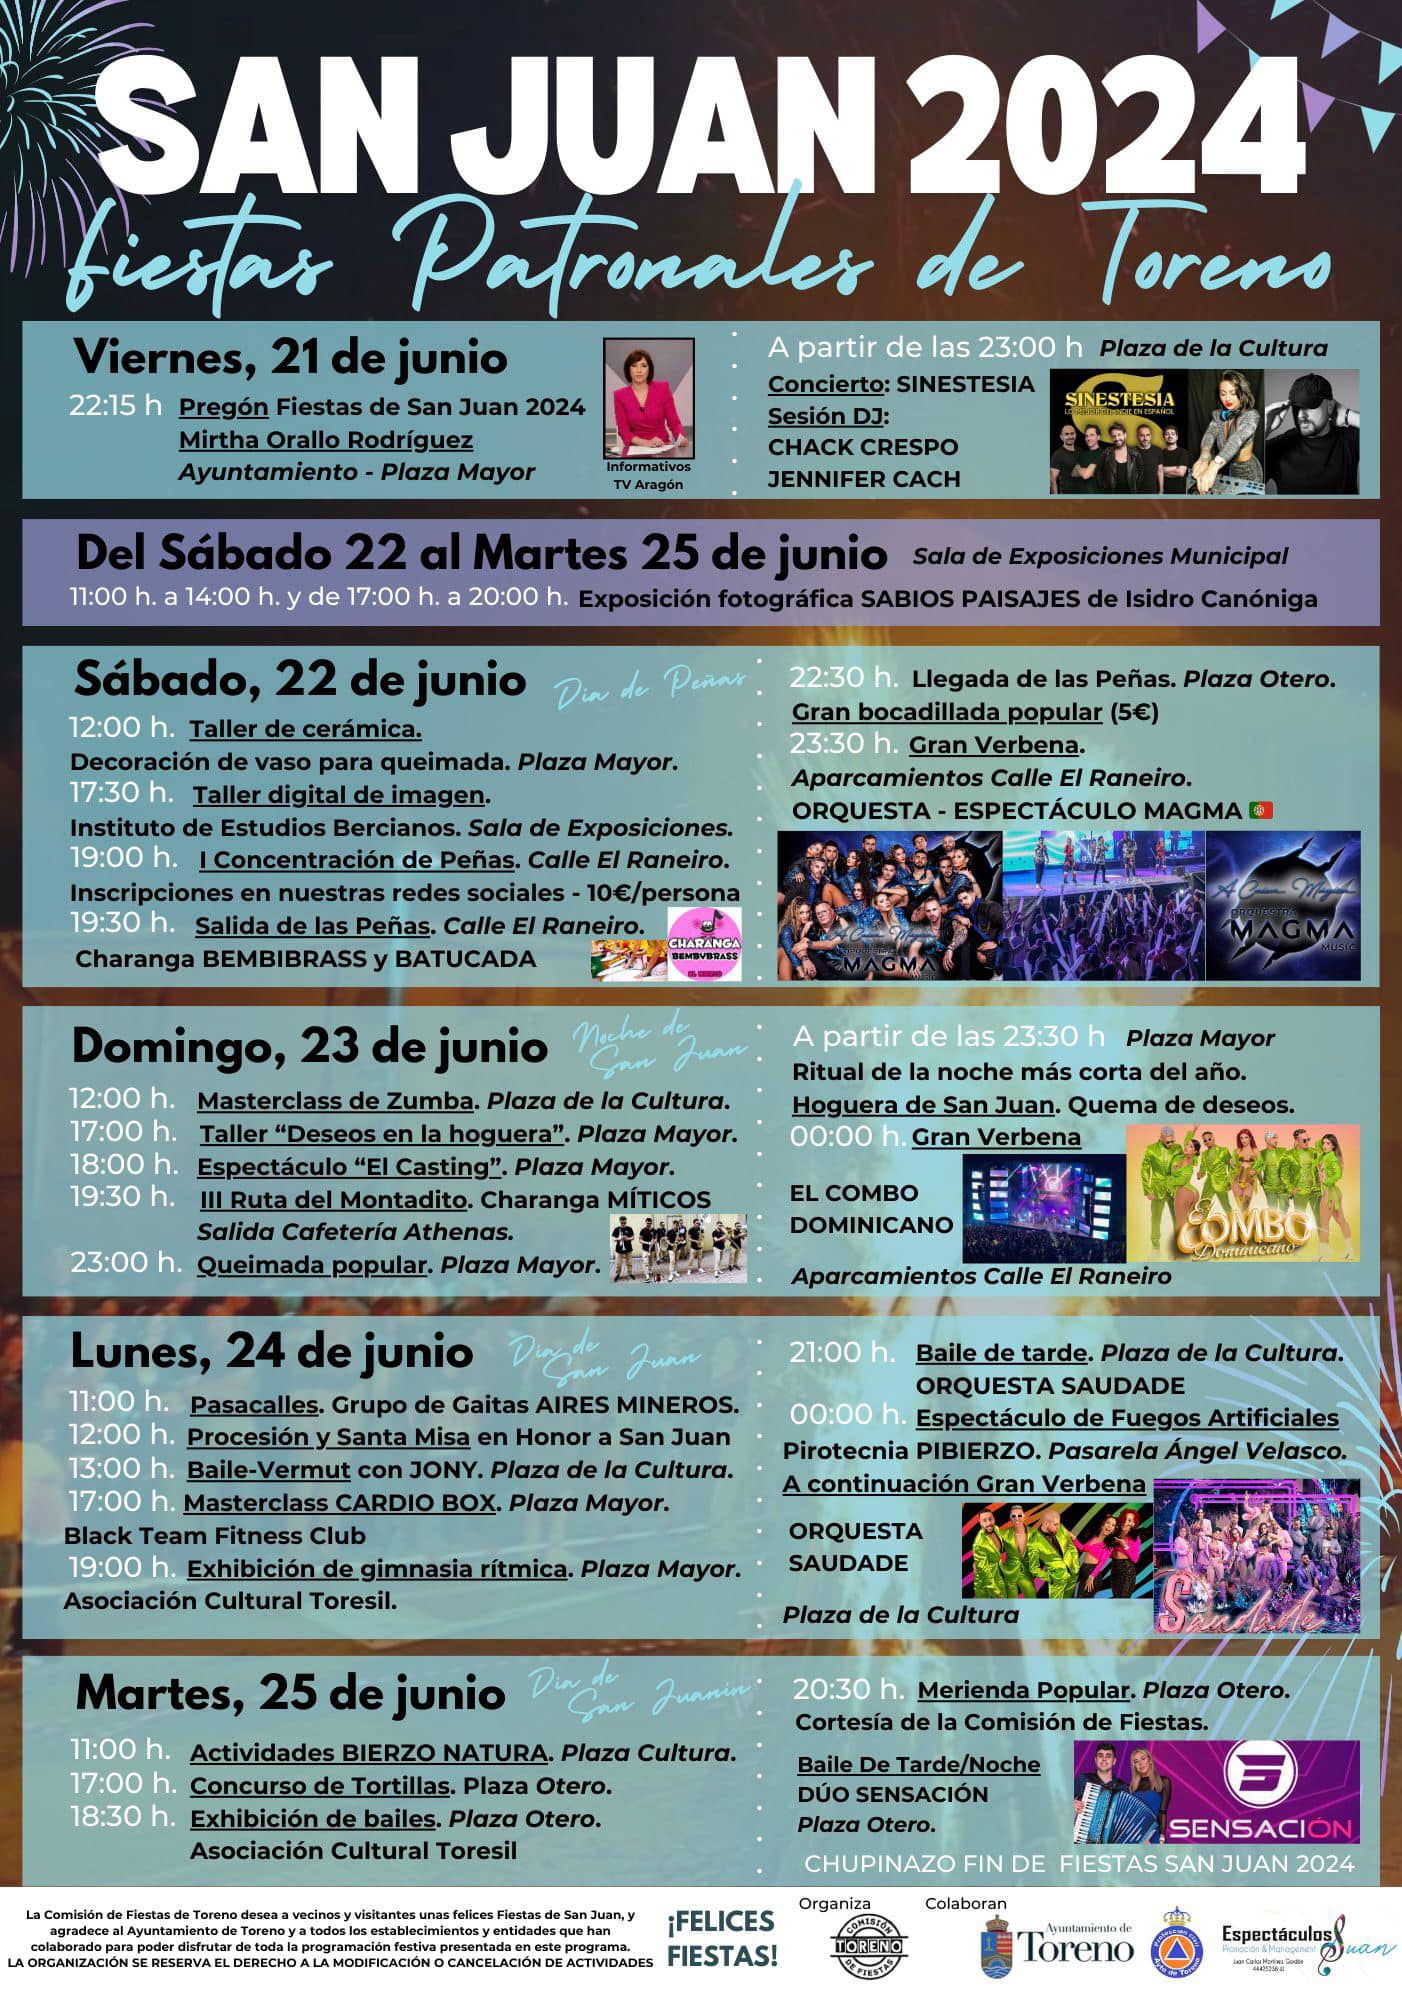 Fiestas de San Juan 2024 en Toreno del 21 al 25 de junio, la hoguera, El Combo Dominicano, Orquesta Magma y mucho más 2